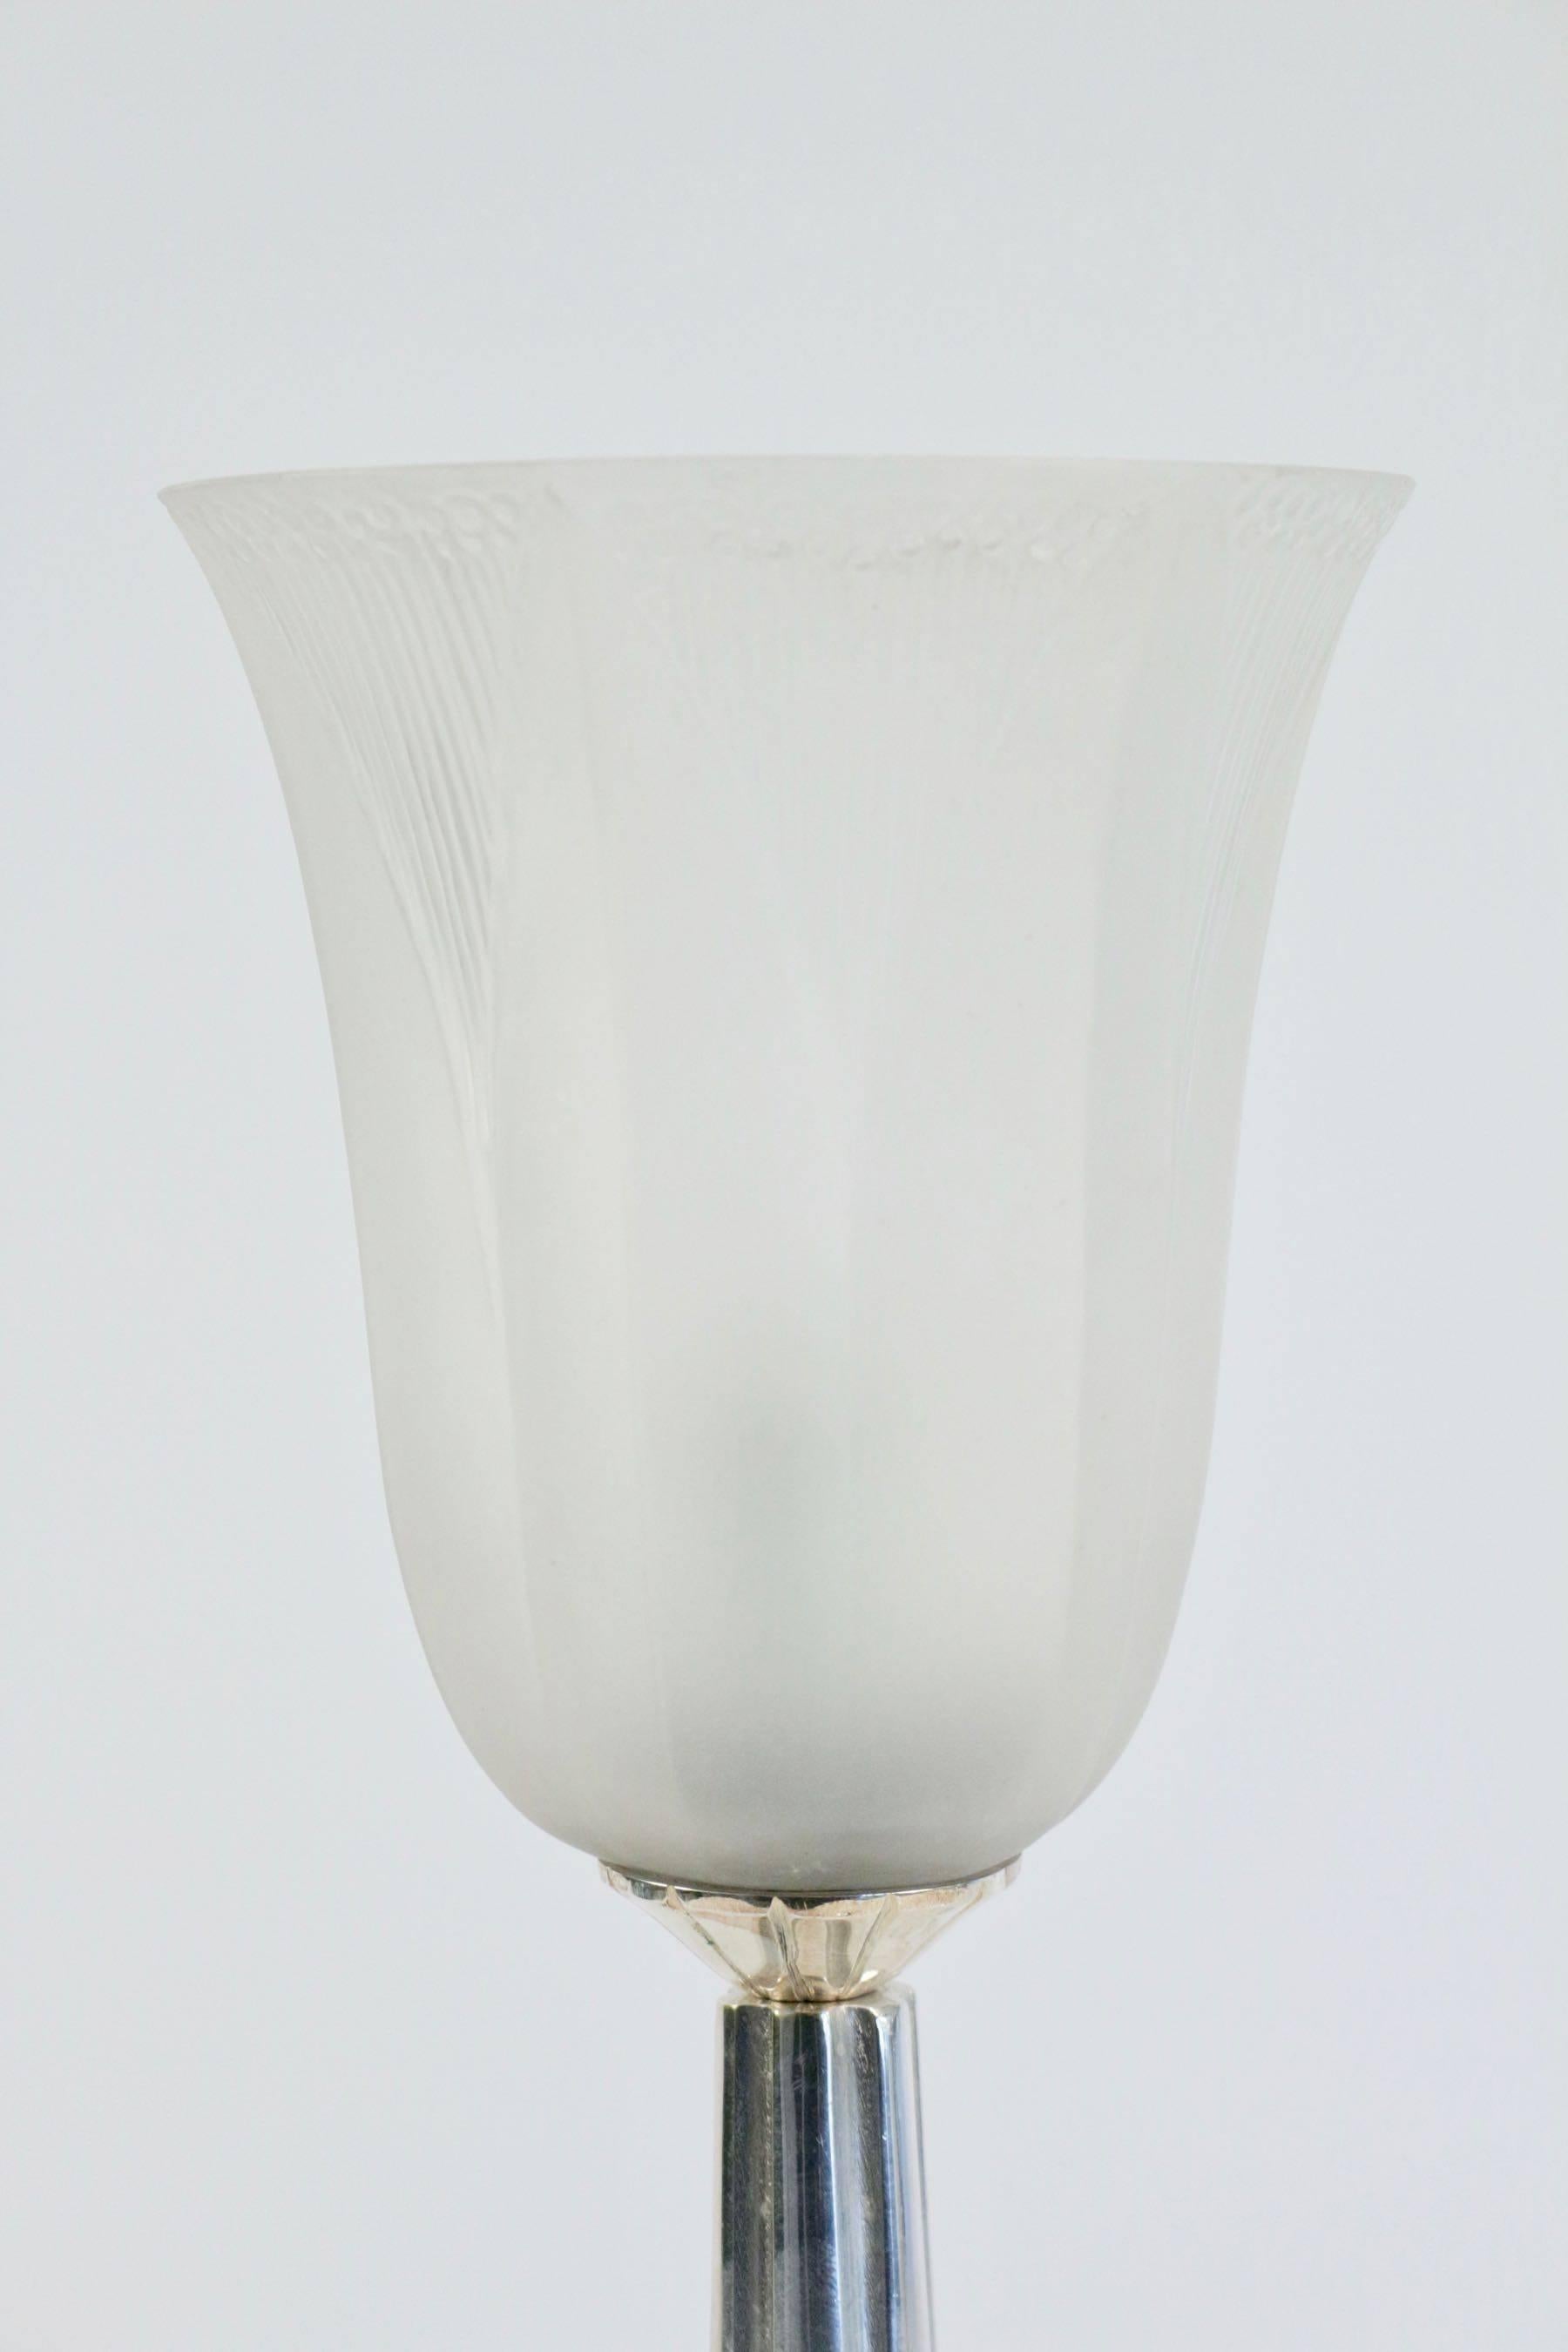 French René Lalique Lamp 